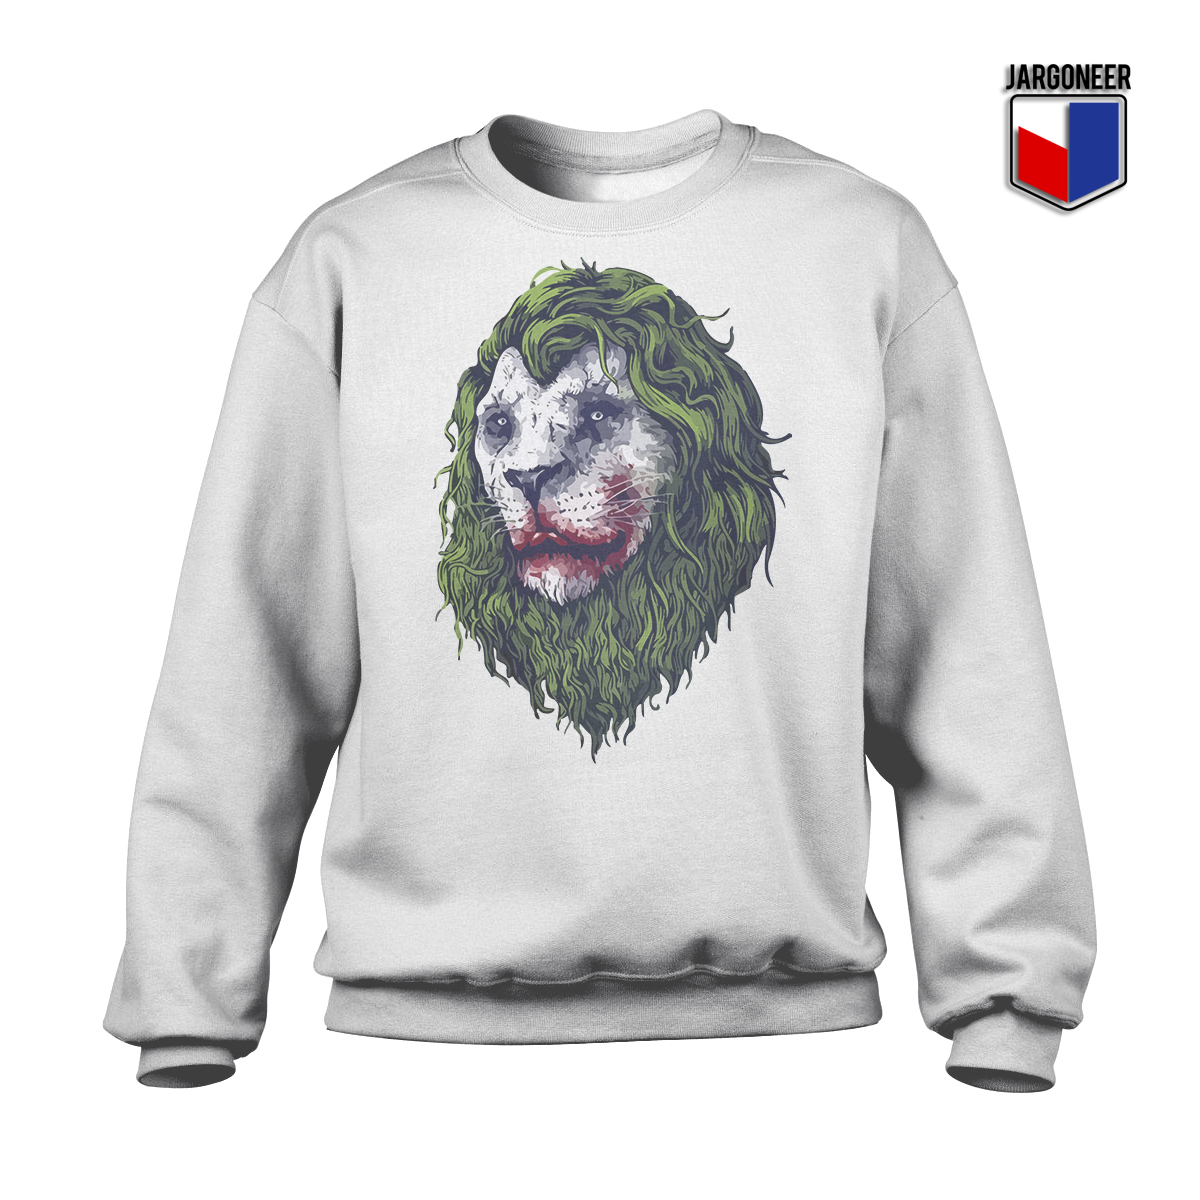 Lion Of Joke White SS - Shop Unique Graphic Cool Shirt Designs